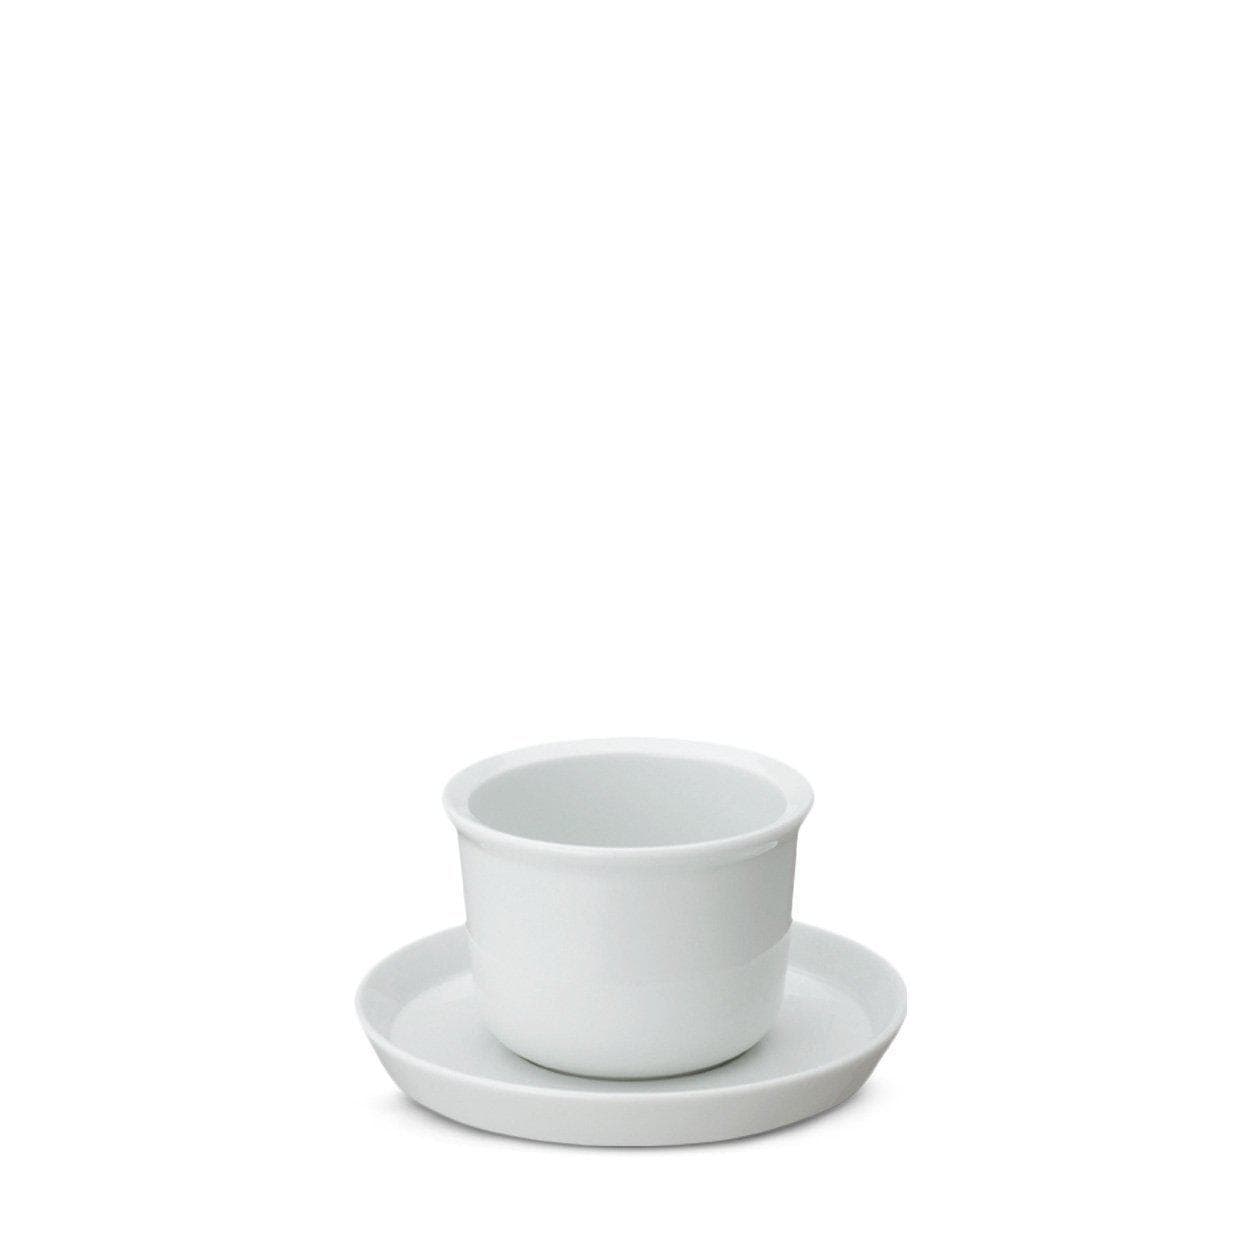 KINTO réinvente le rituel du thé avec la tasse LEAVES TO TEA. La beauté de la porcelaine de Hasami dans une forme minimaliste pour une dégustation mémorable.